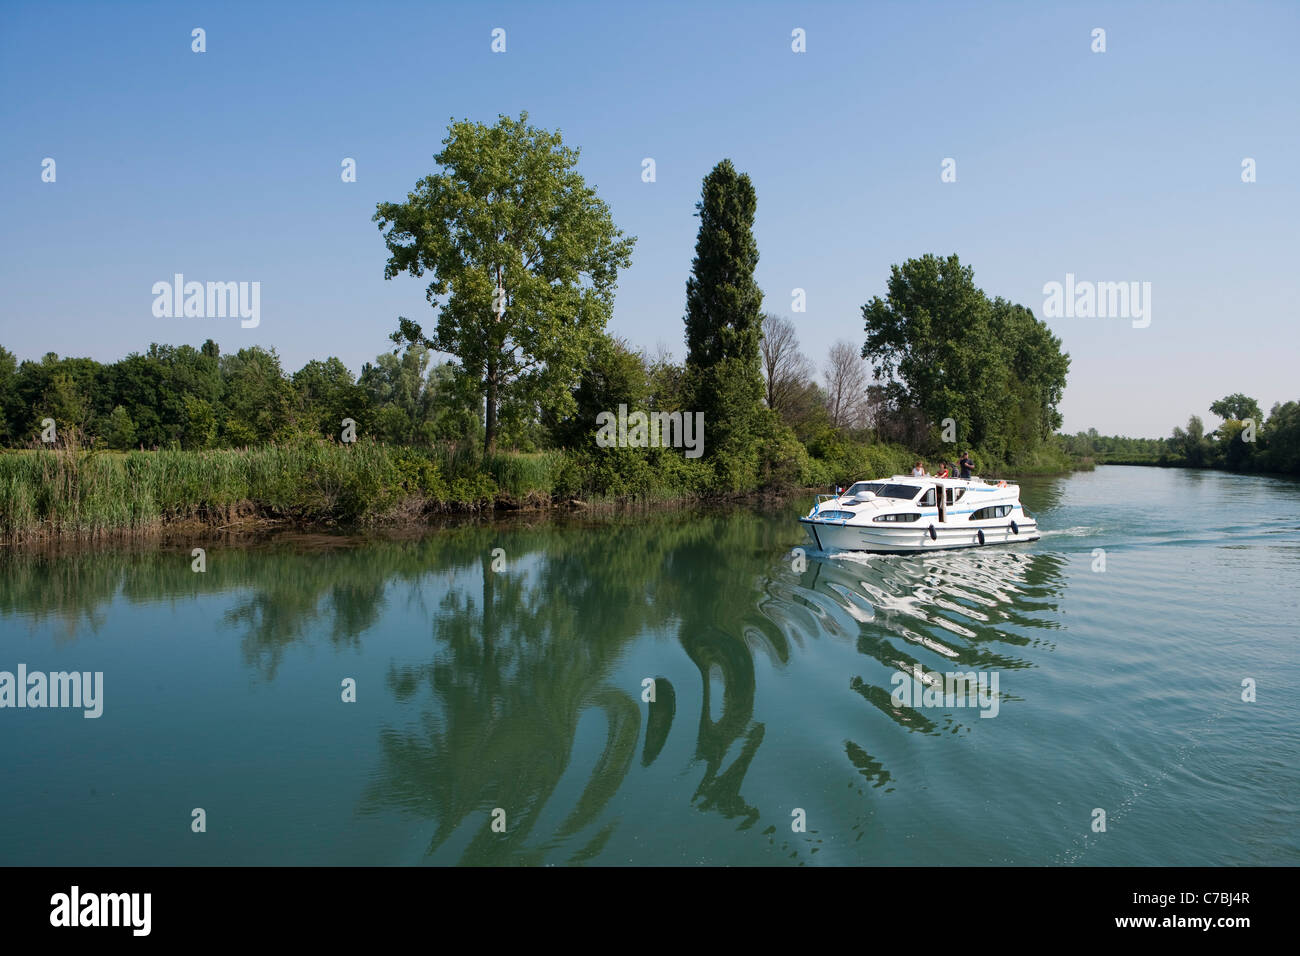 Le Boat Magnifique houseboat on Fiume Stella river, near Precenicco, Friuli-Venezia Giulia, Italy Stock Photo